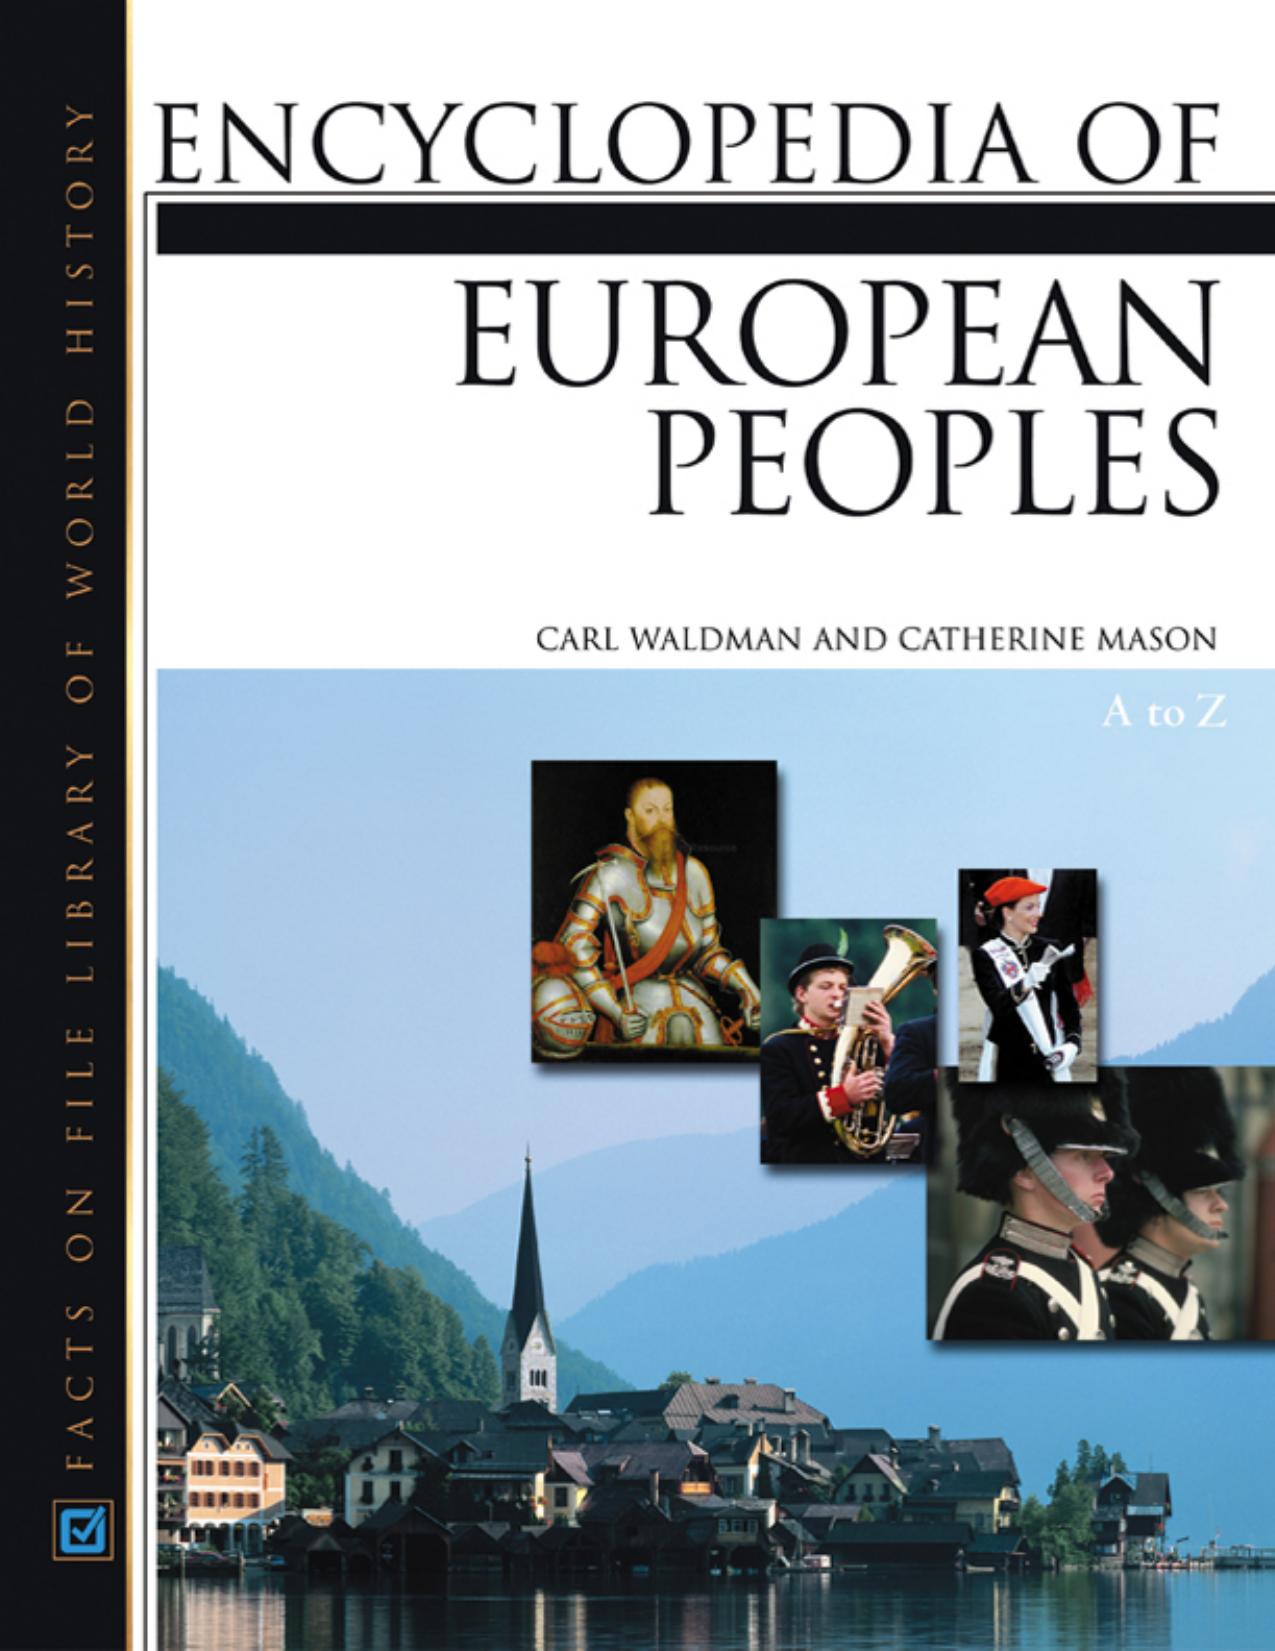 Encyclopedia of European Peoples